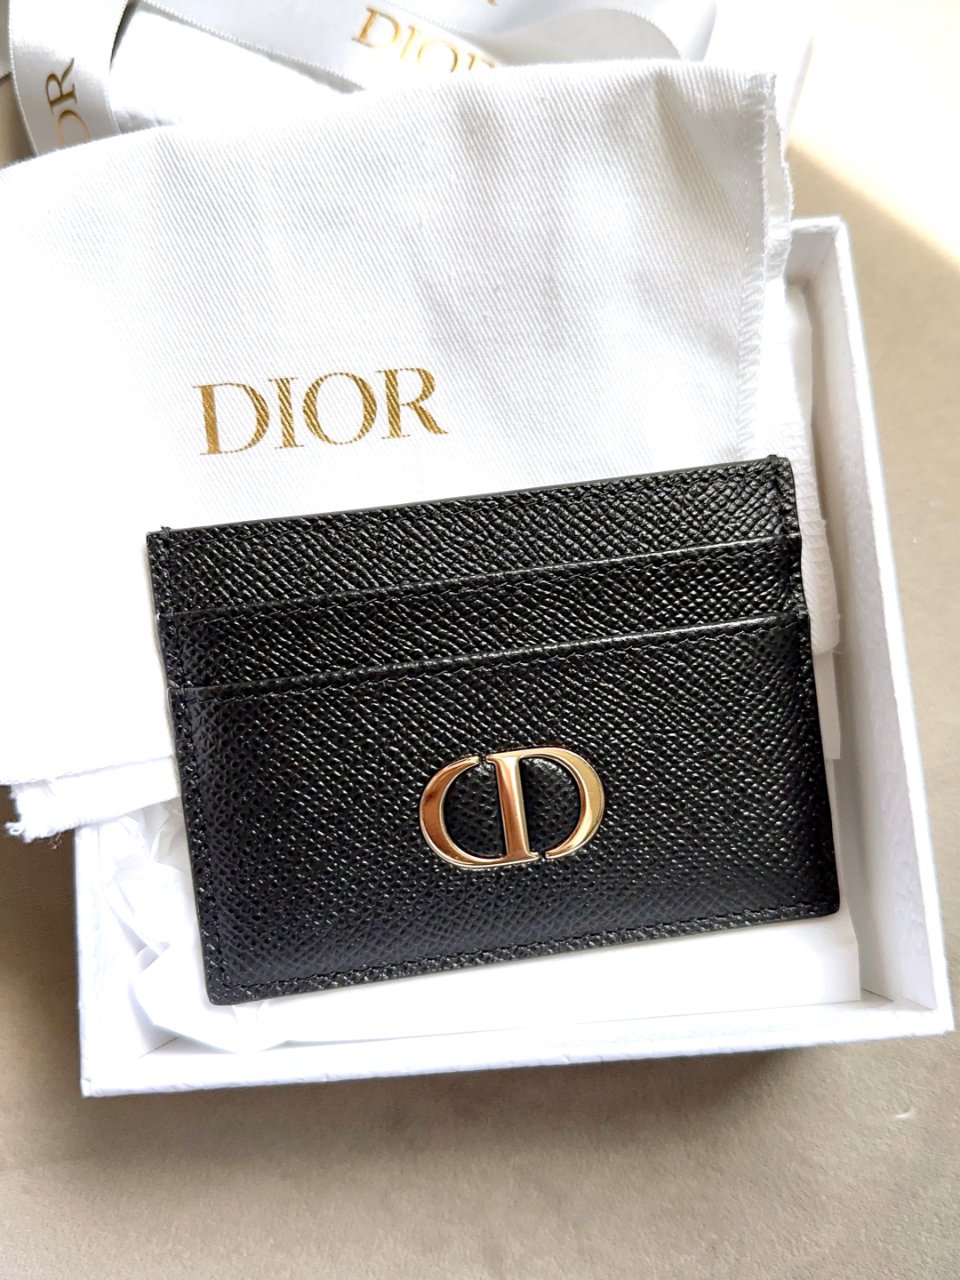 母亲节礼物💝~Dior 卡夹...